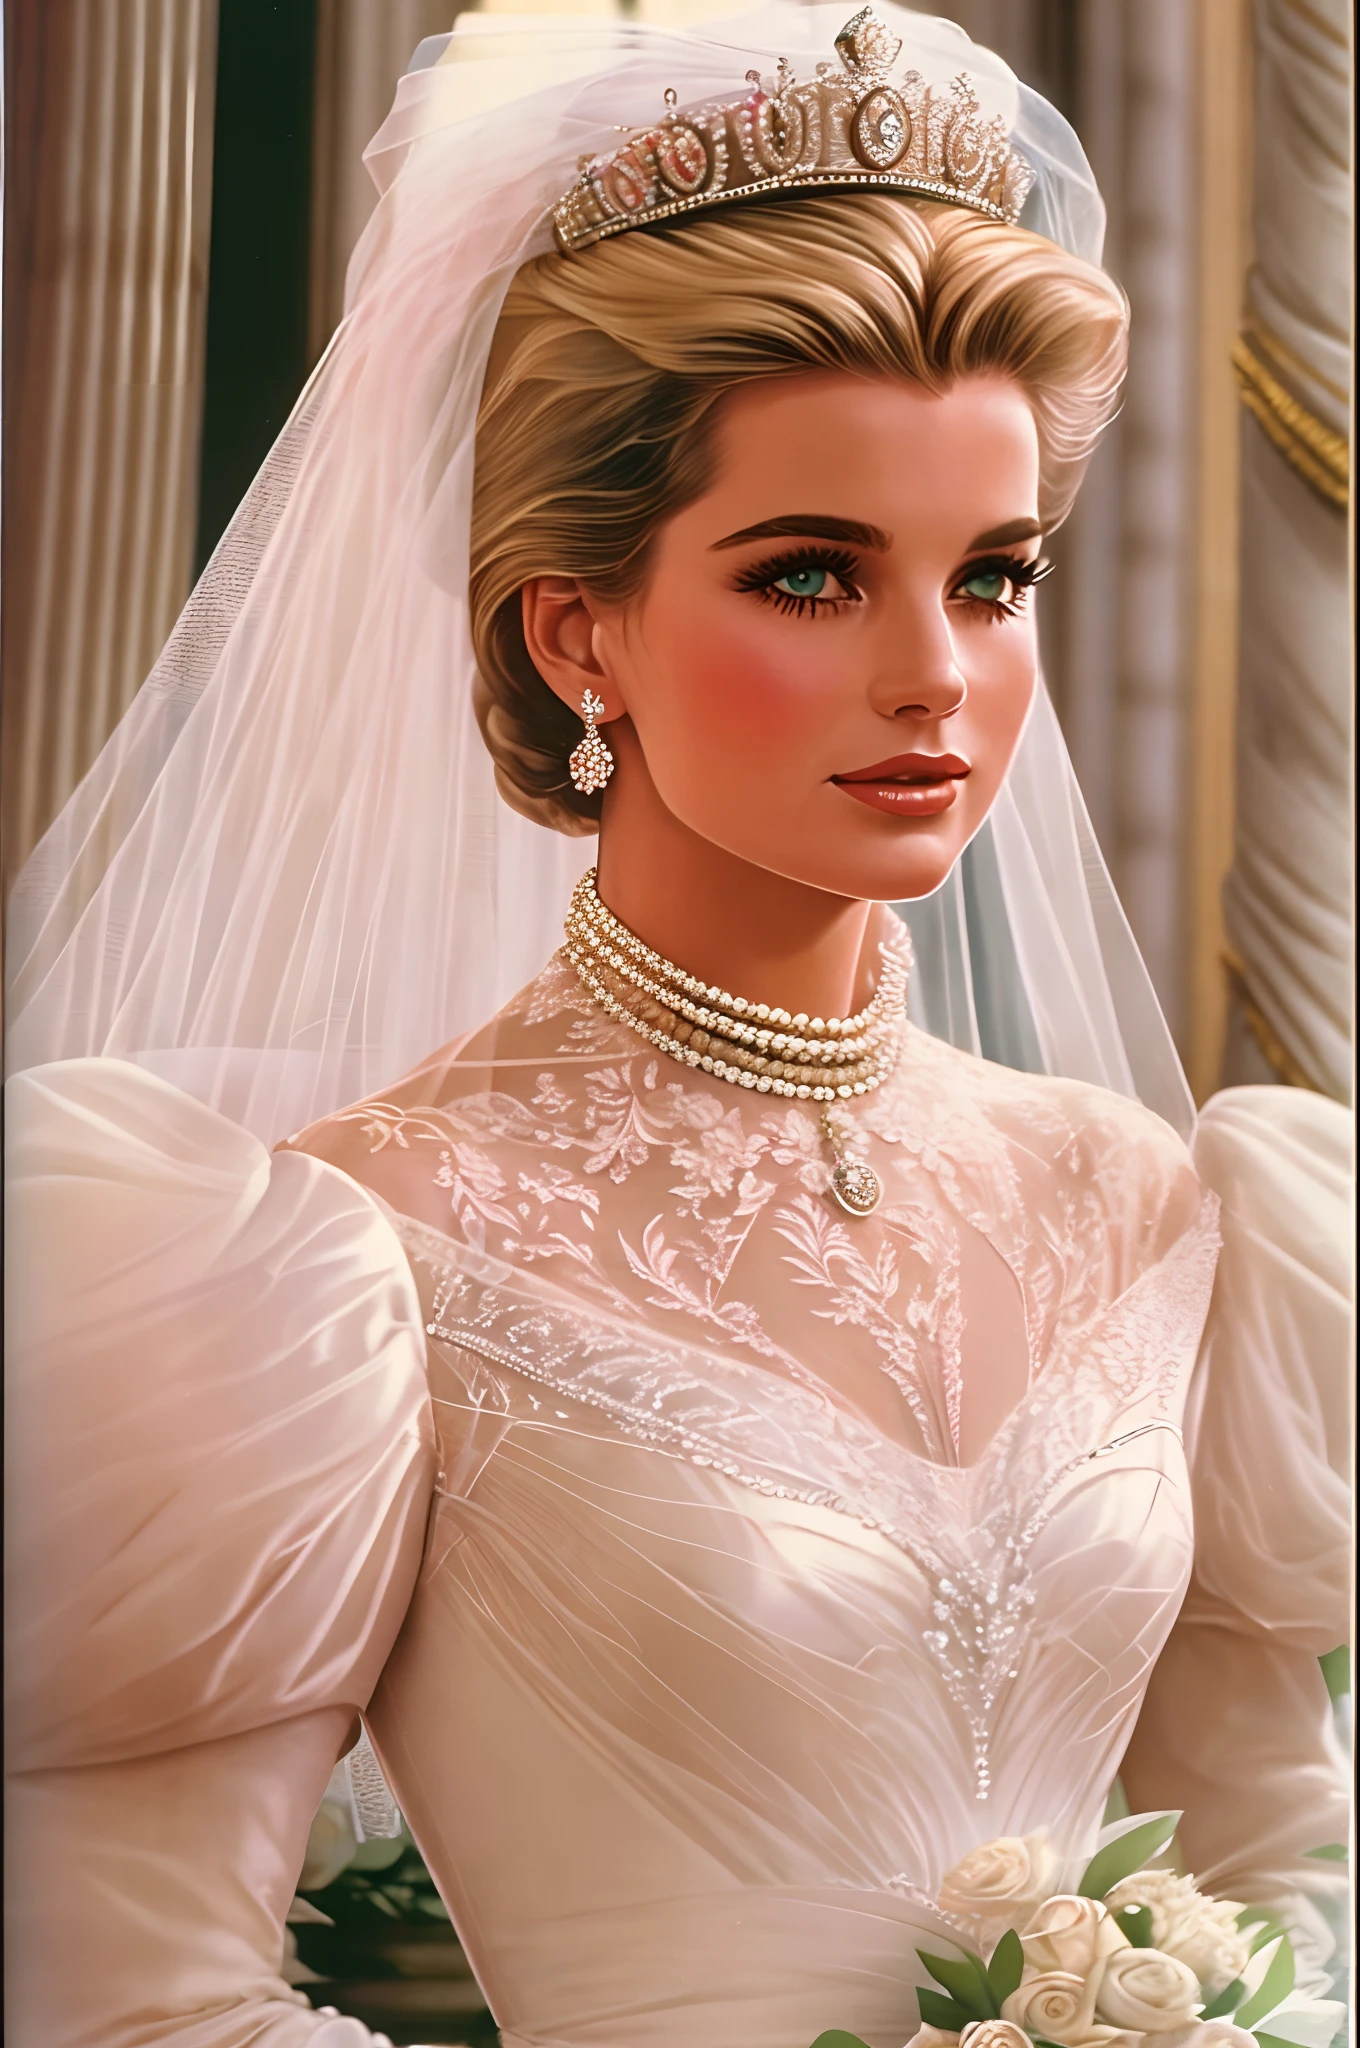 1980年代スタイル, Grace Kelly's royal wedding dress updated for the late 1980's with a Cinderella aesthetic and influence from Princess Diana's and Sarah Ferguson's wedding dresses